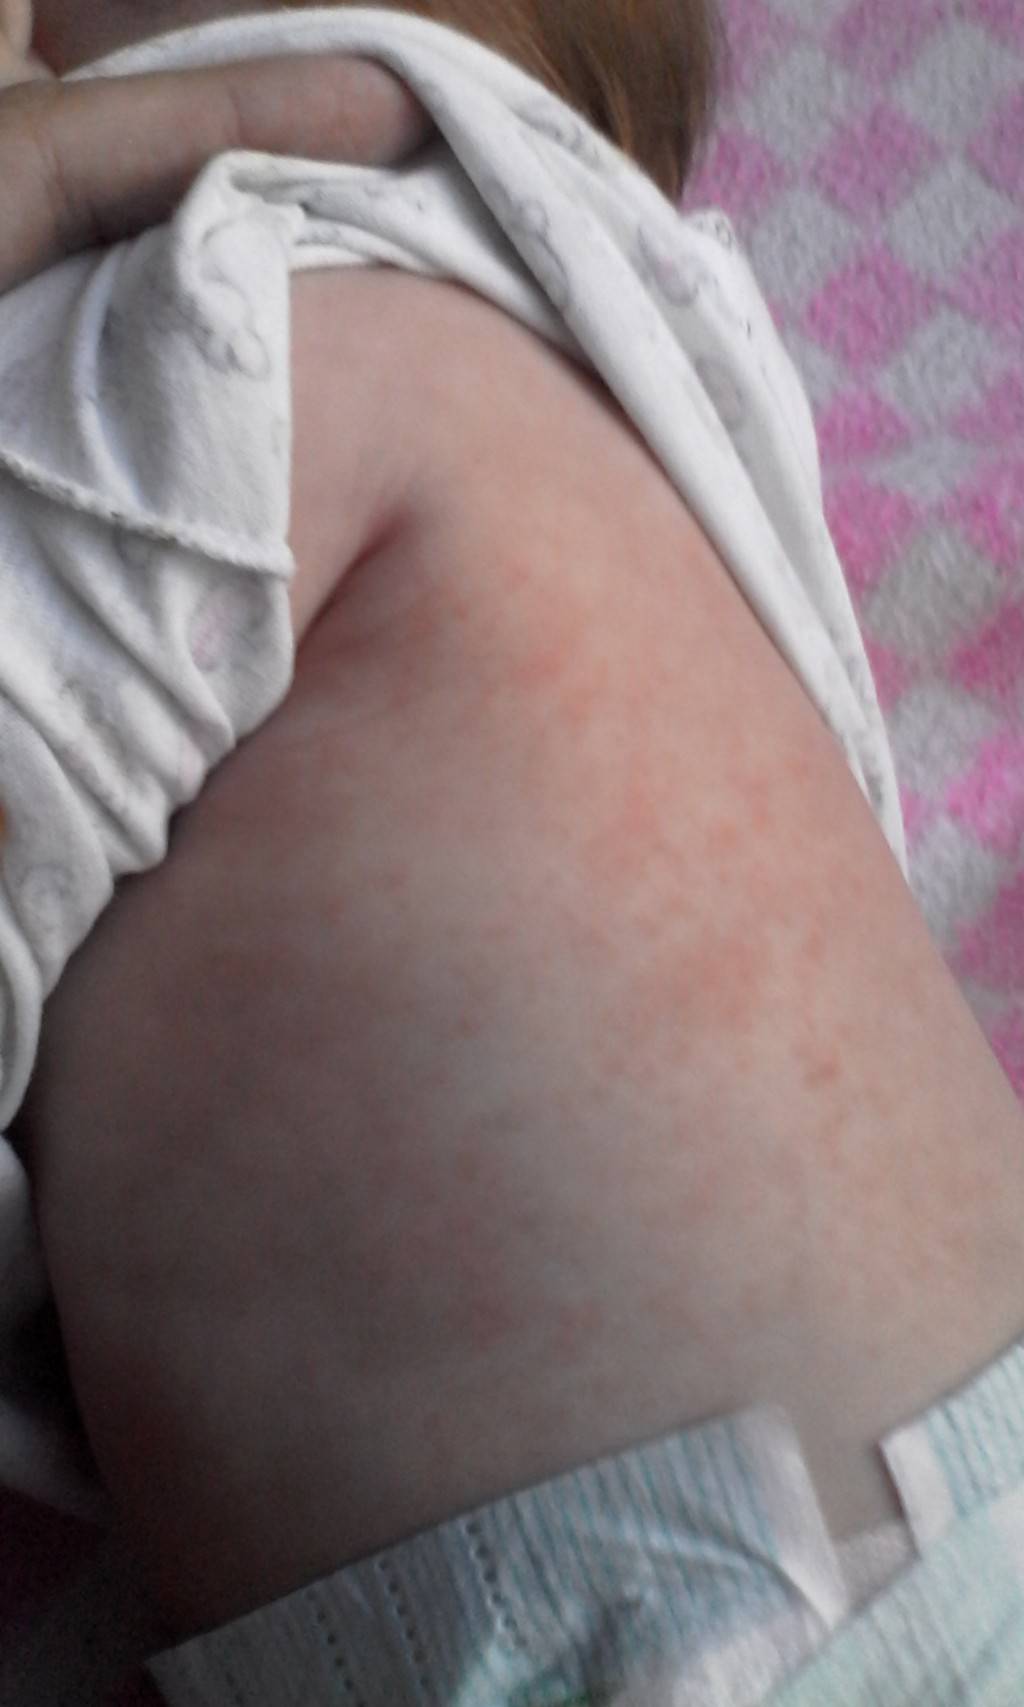 Аллергия без высыпаний на коже • аллергия и аллергические реакции